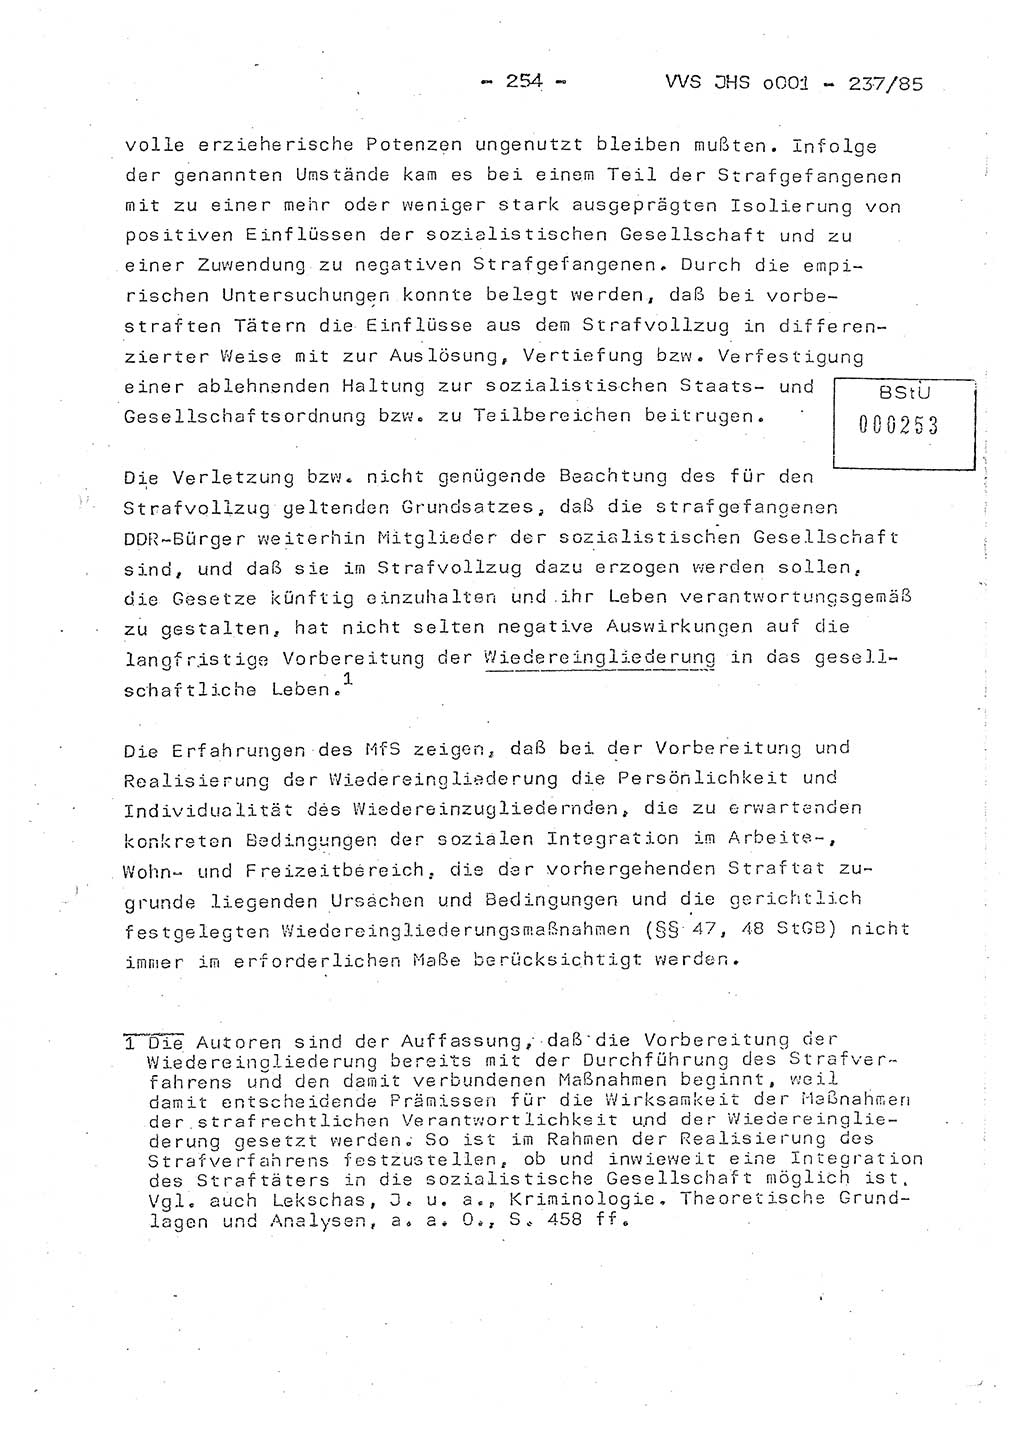 Dissertation Oberstleutnant Peter Jakulski (JHS), Oberstleutnat Christian Rudolph (HA Ⅸ), Major Horst Böttger (ZMD), Major Wolfgang Grüneberg (JHS), Major Albert Meutsch (JHS), Ministerium für Staatssicherheit (MfS) [Deutsche Demokratische Republik (DDR)], Juristische Hochschule (JHS), Vertrauliche Verschlußsache (VVS) o001-237/85, Potsdam 1985, Seite 254 (Diss. MfS DDR JHS VVS o001-237/85 1985, S. 254)